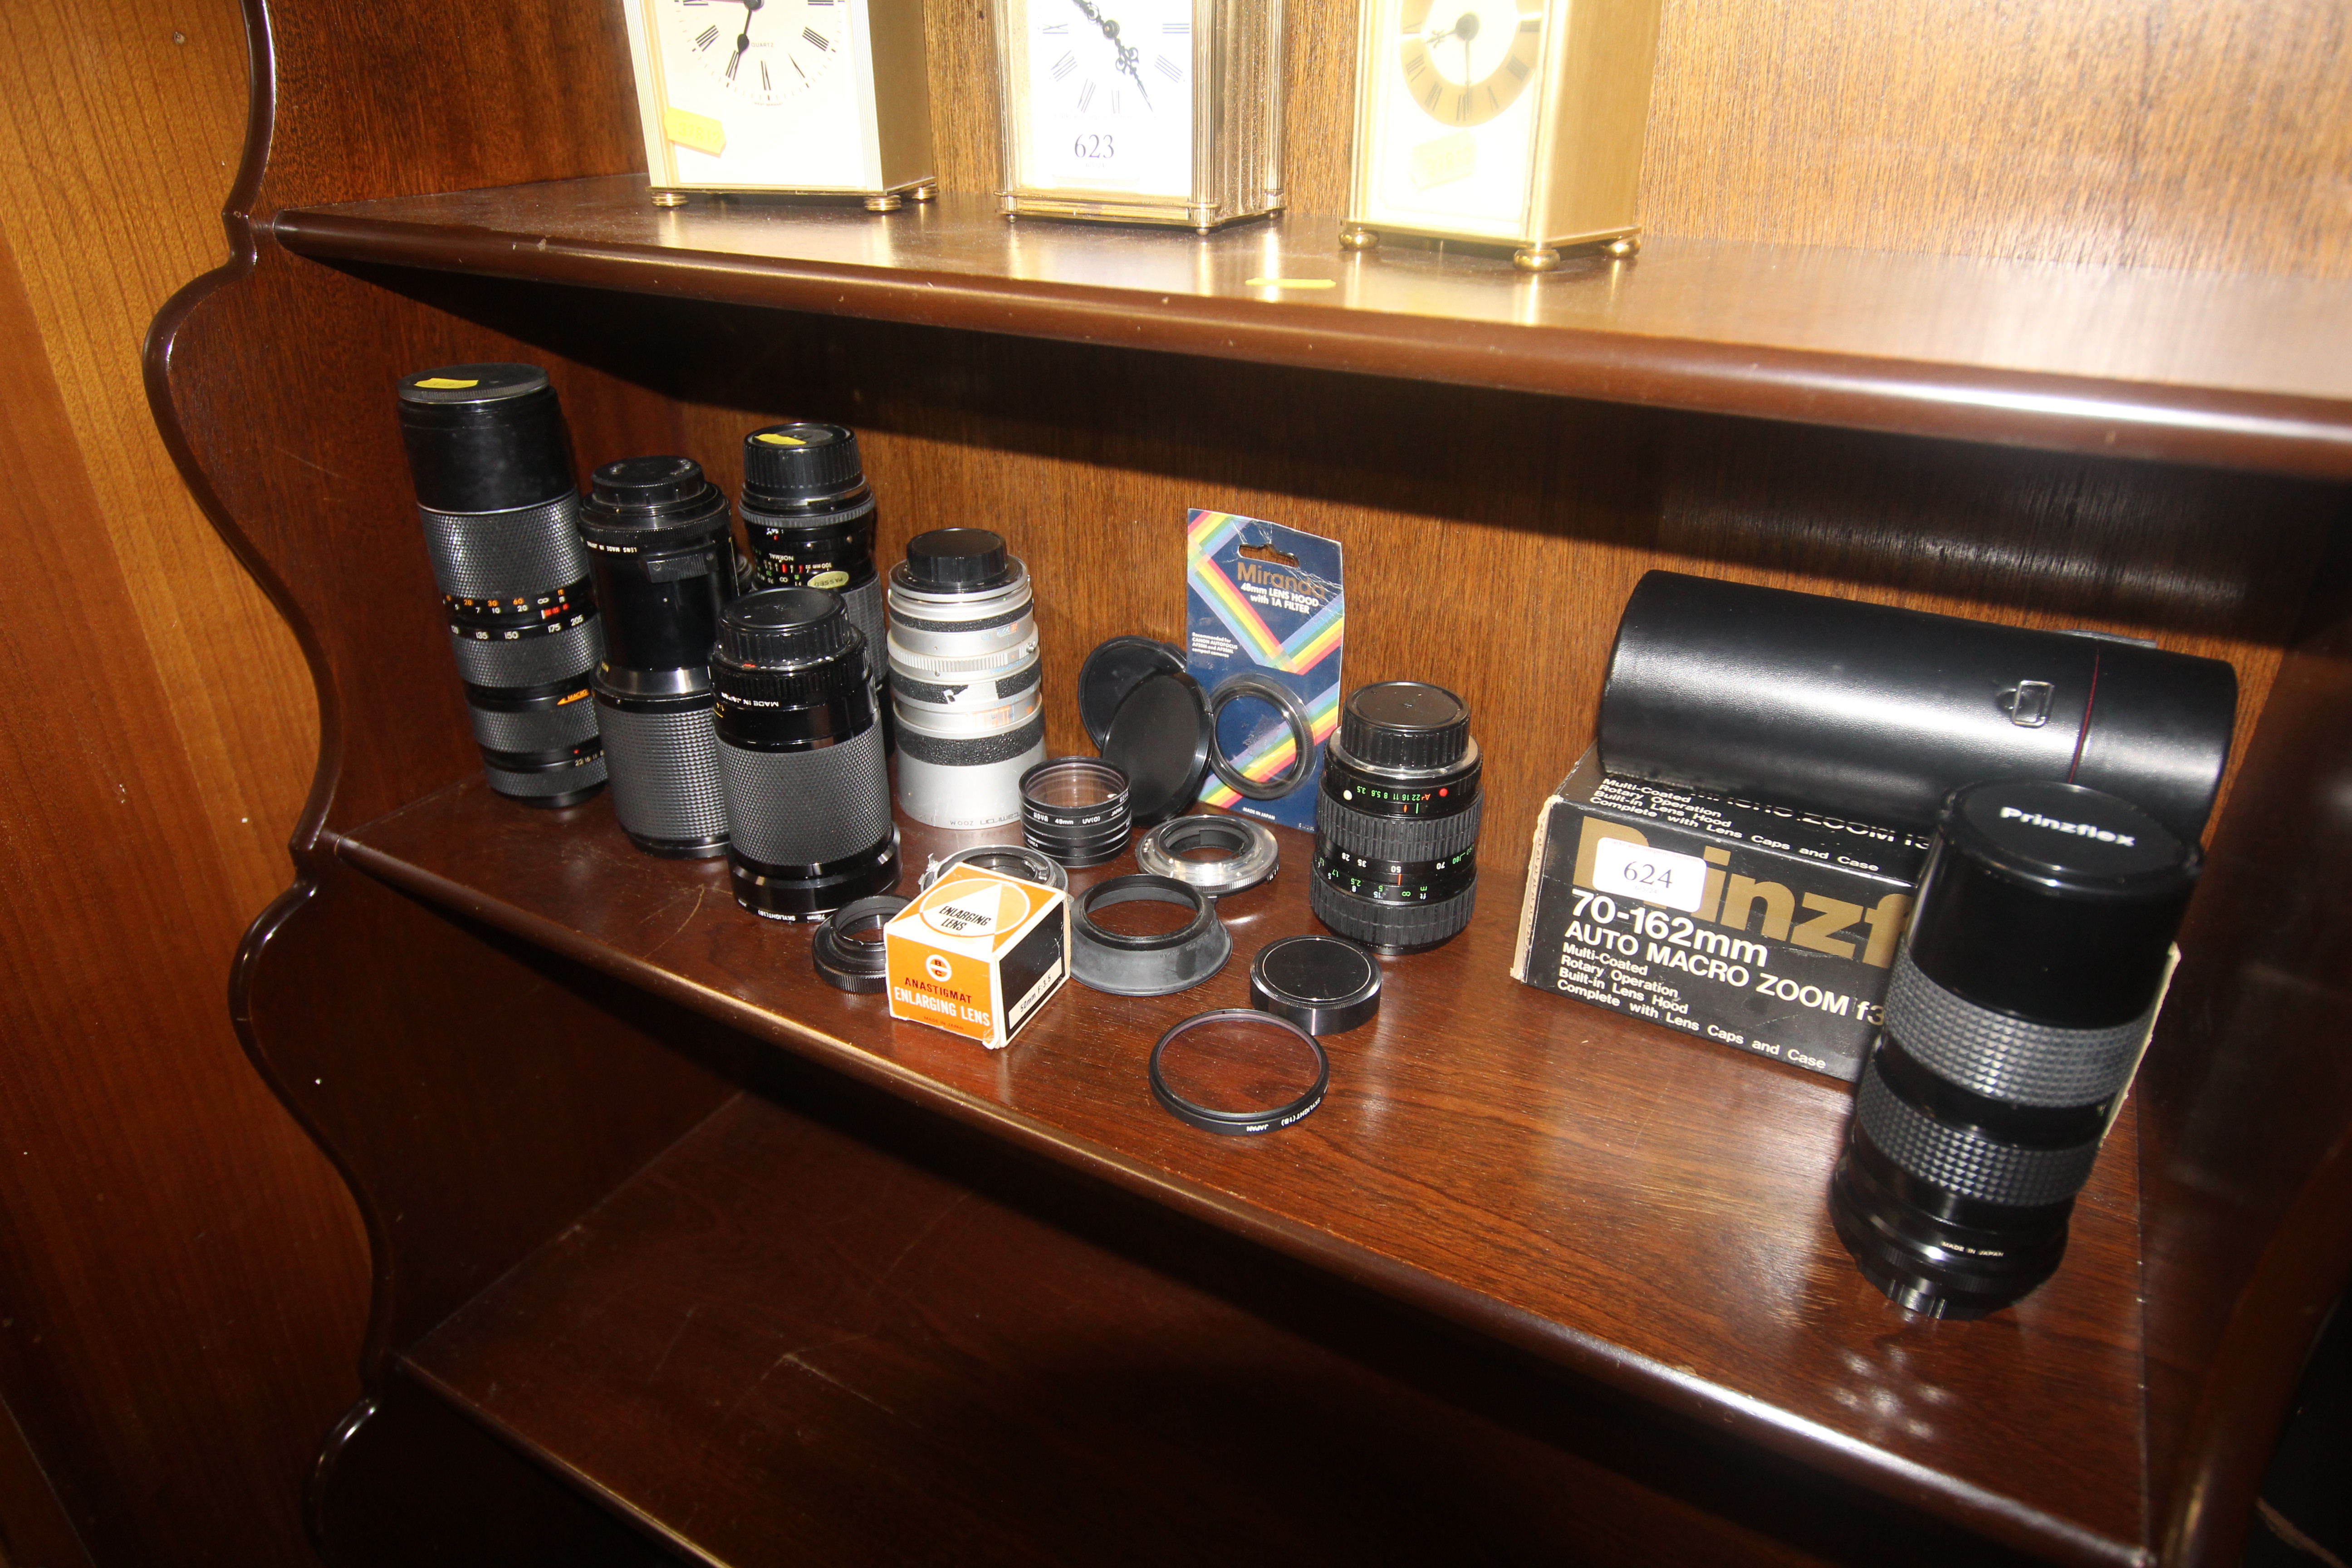 Eight various camera lenses etc